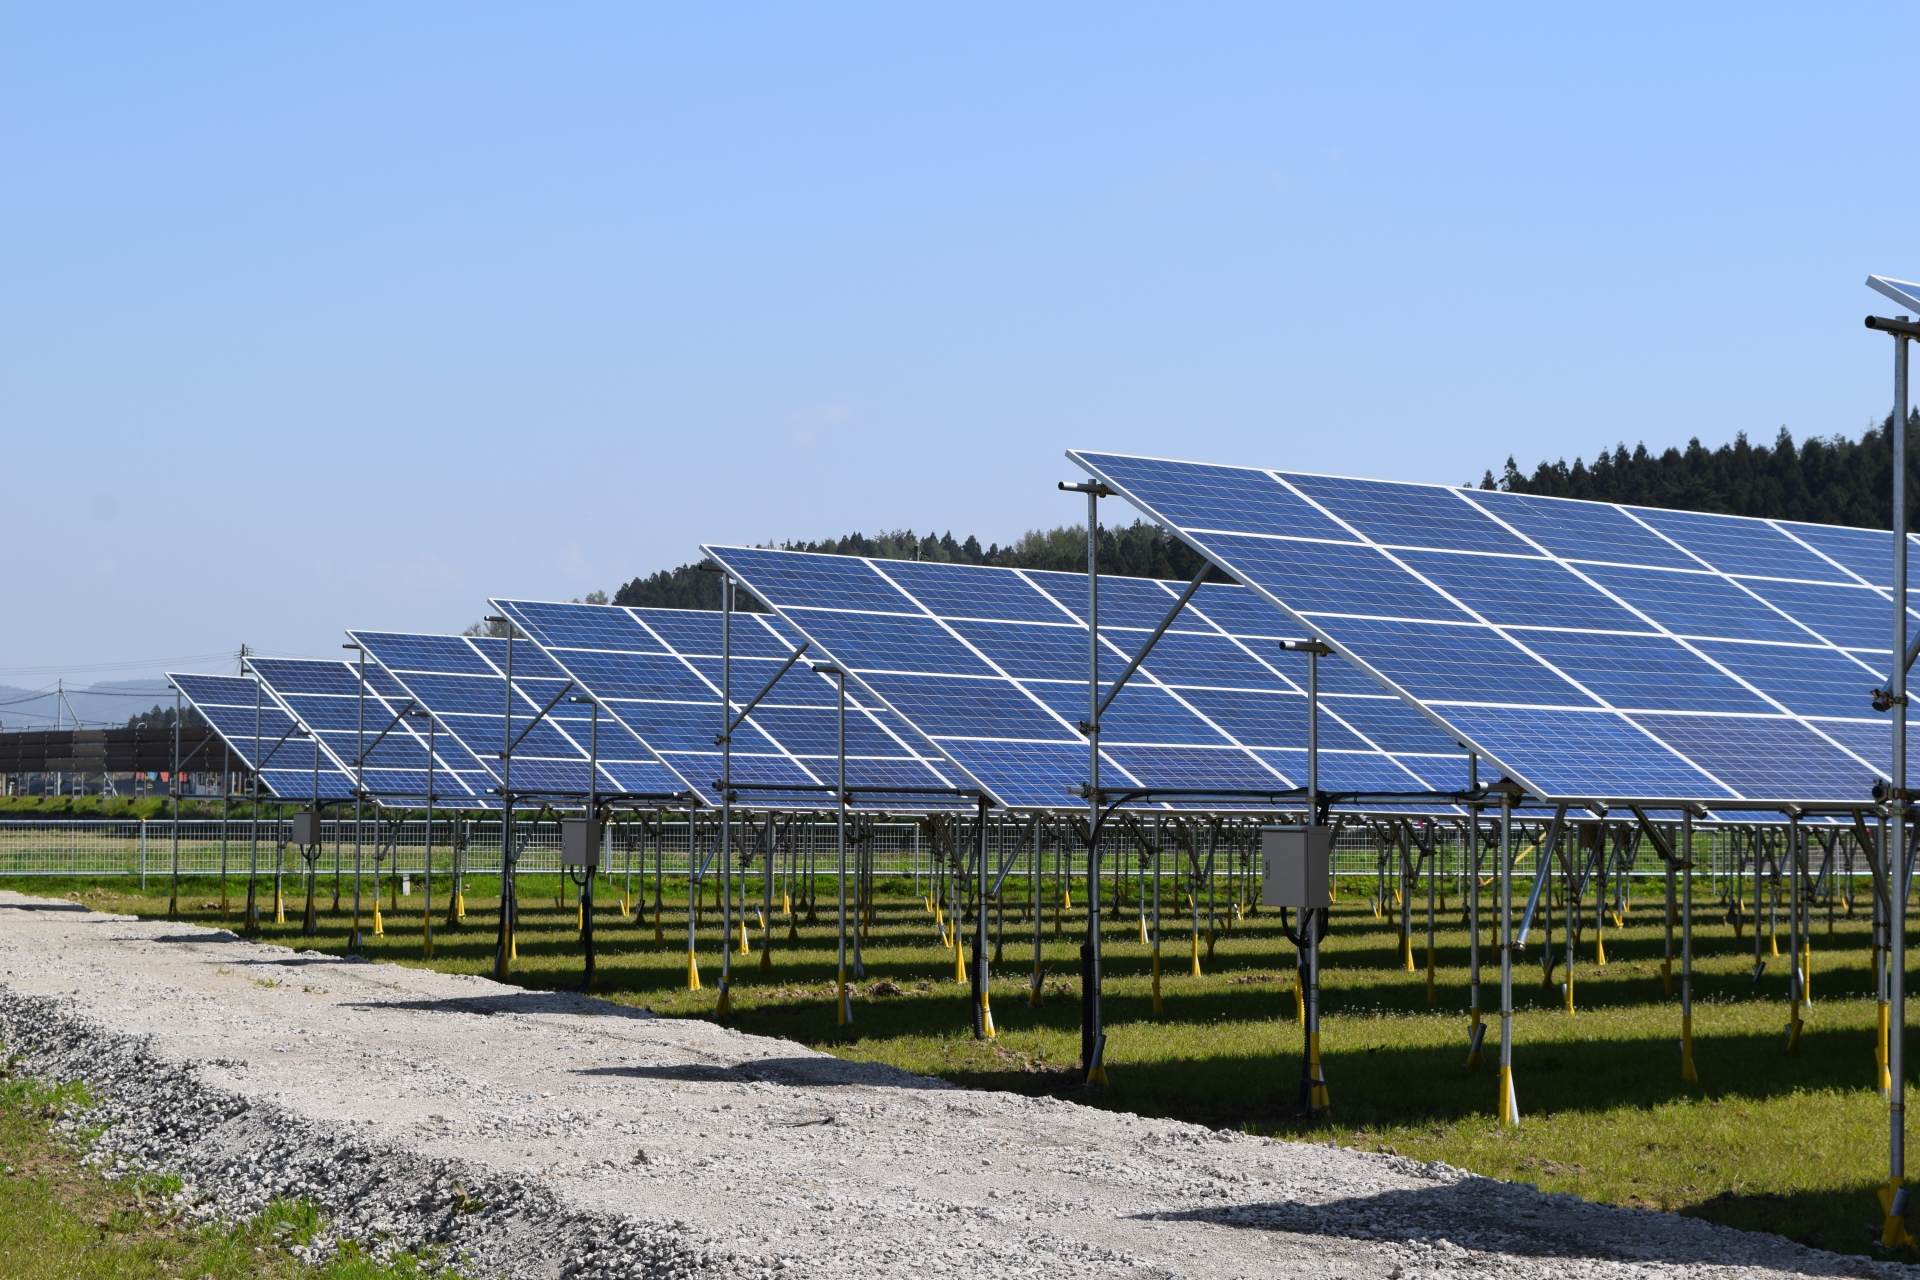 再生可能エネルギーとして注目されている太陽光発電とは？仕組みやメリット・デメリットも合わせて解説